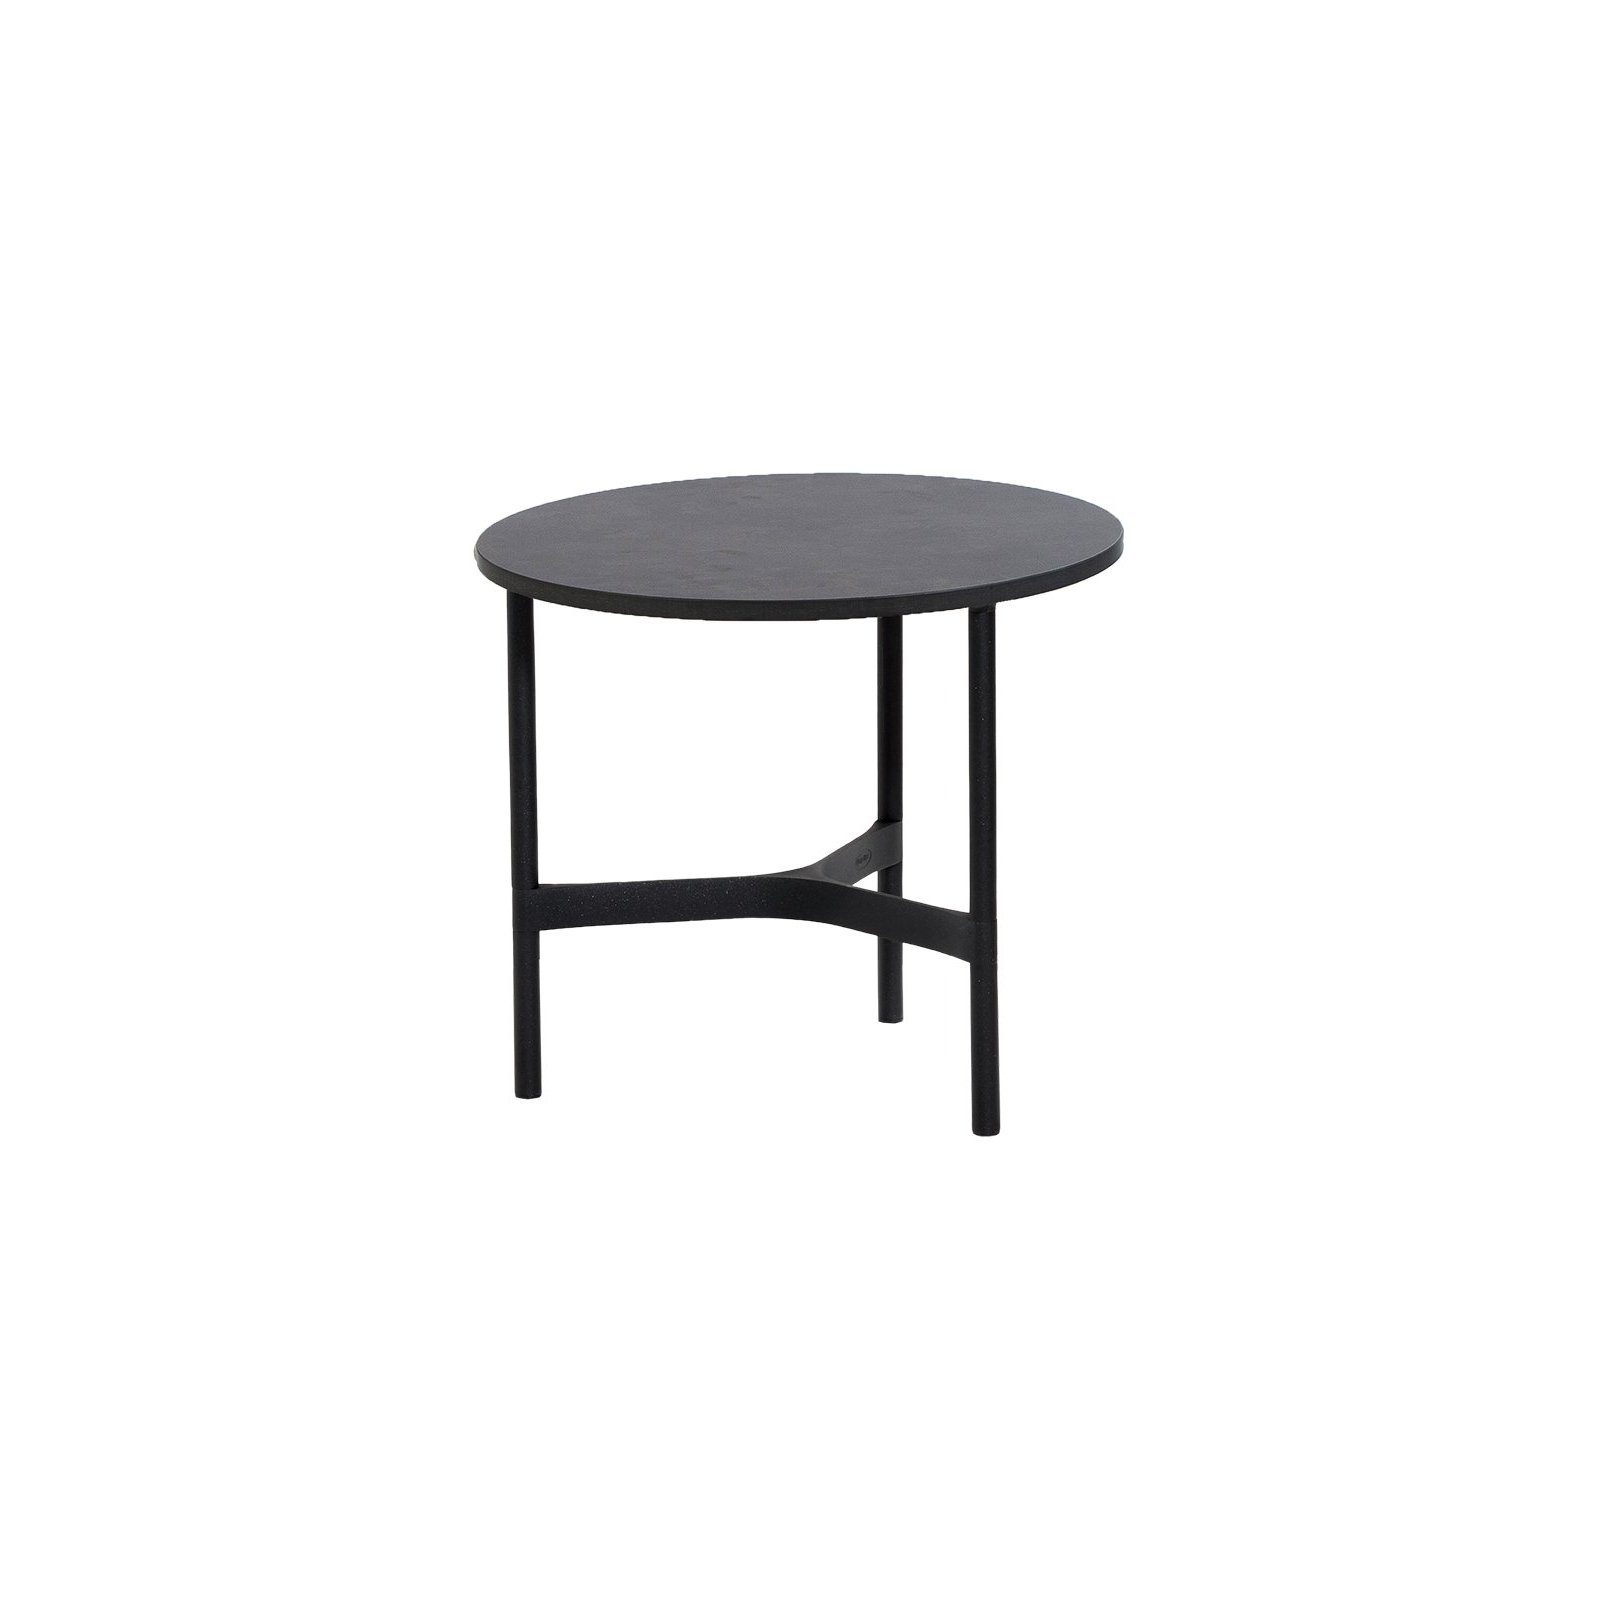 Cane-line "Twist" Loungetisch, klein, Gestell Aluminium lavagrau, Tischplatte HPL dark grey structure